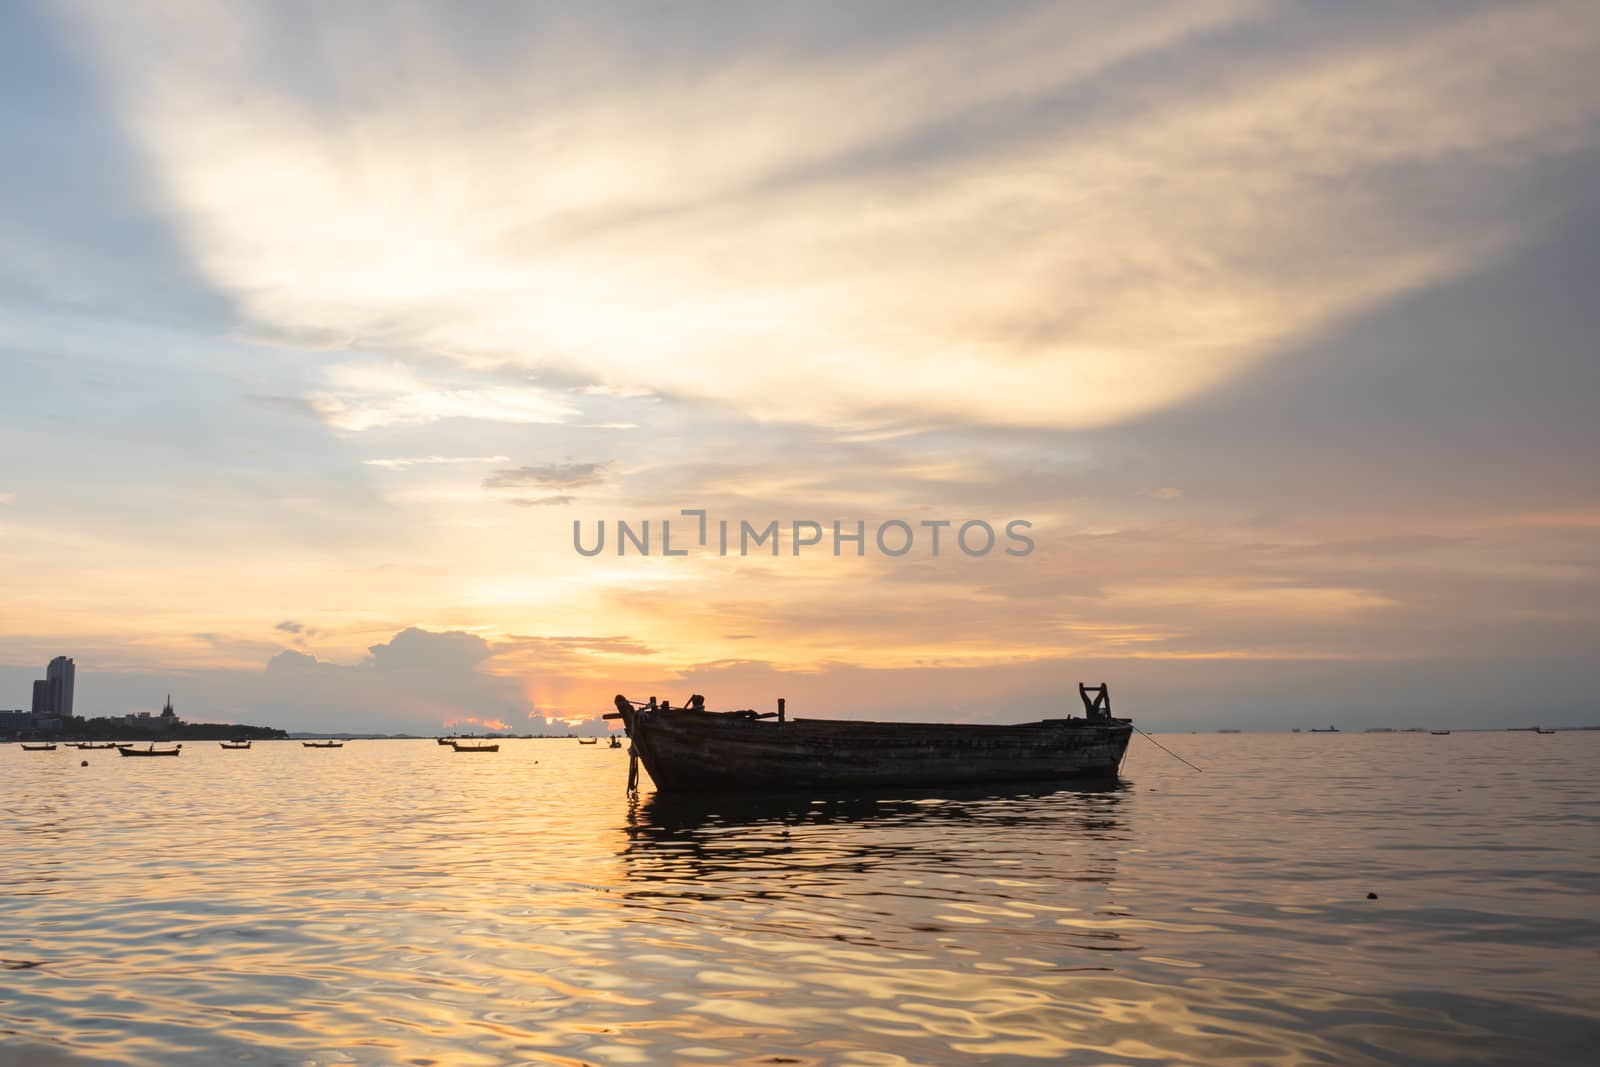 Boat in the ocean. Sunset scene.